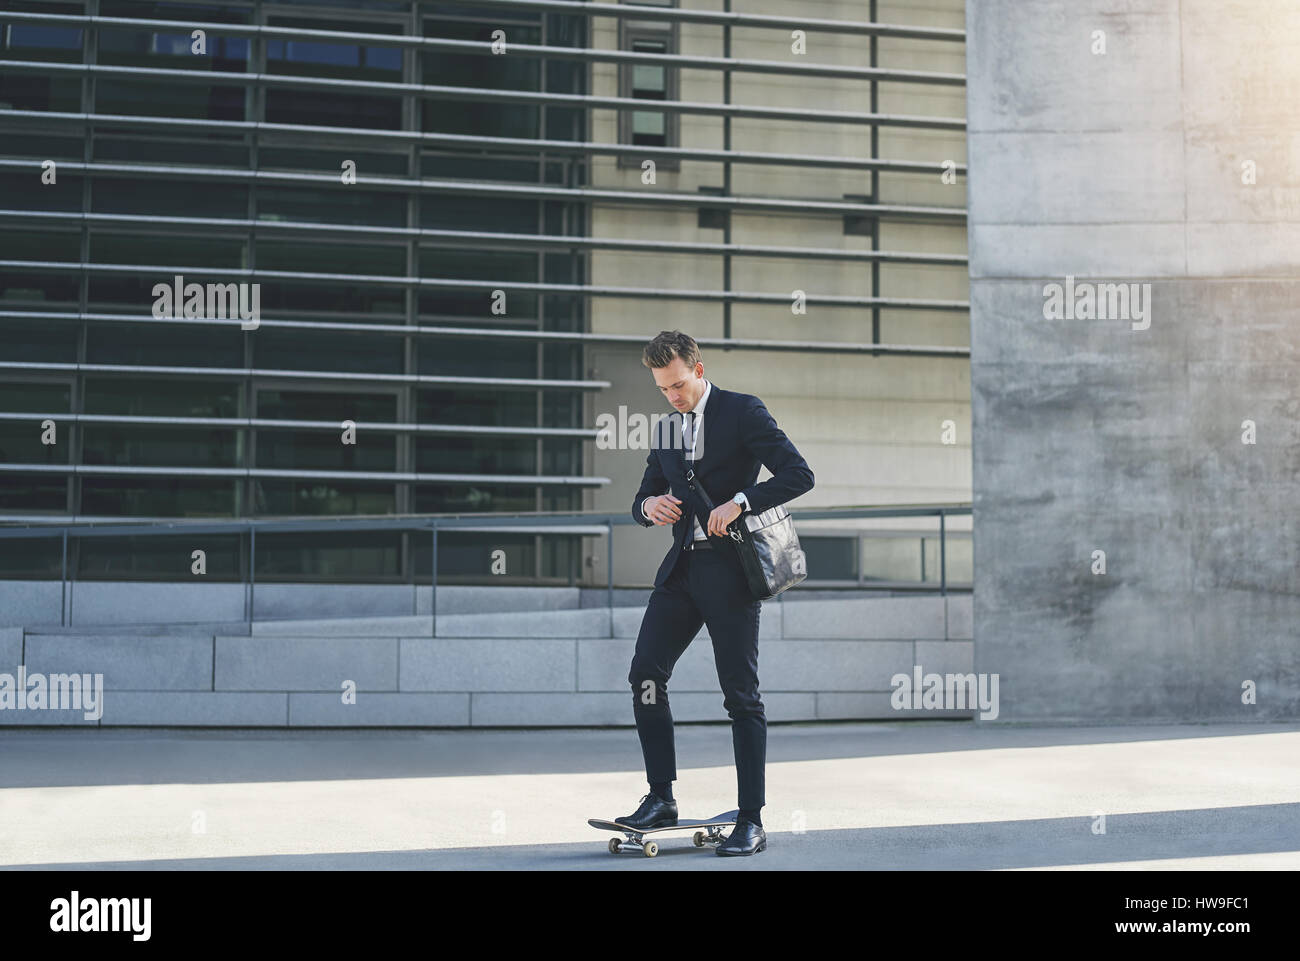 Vue frontale d'un businessman adjusting son sac en se tenant sur le skateboard Banque D'Images